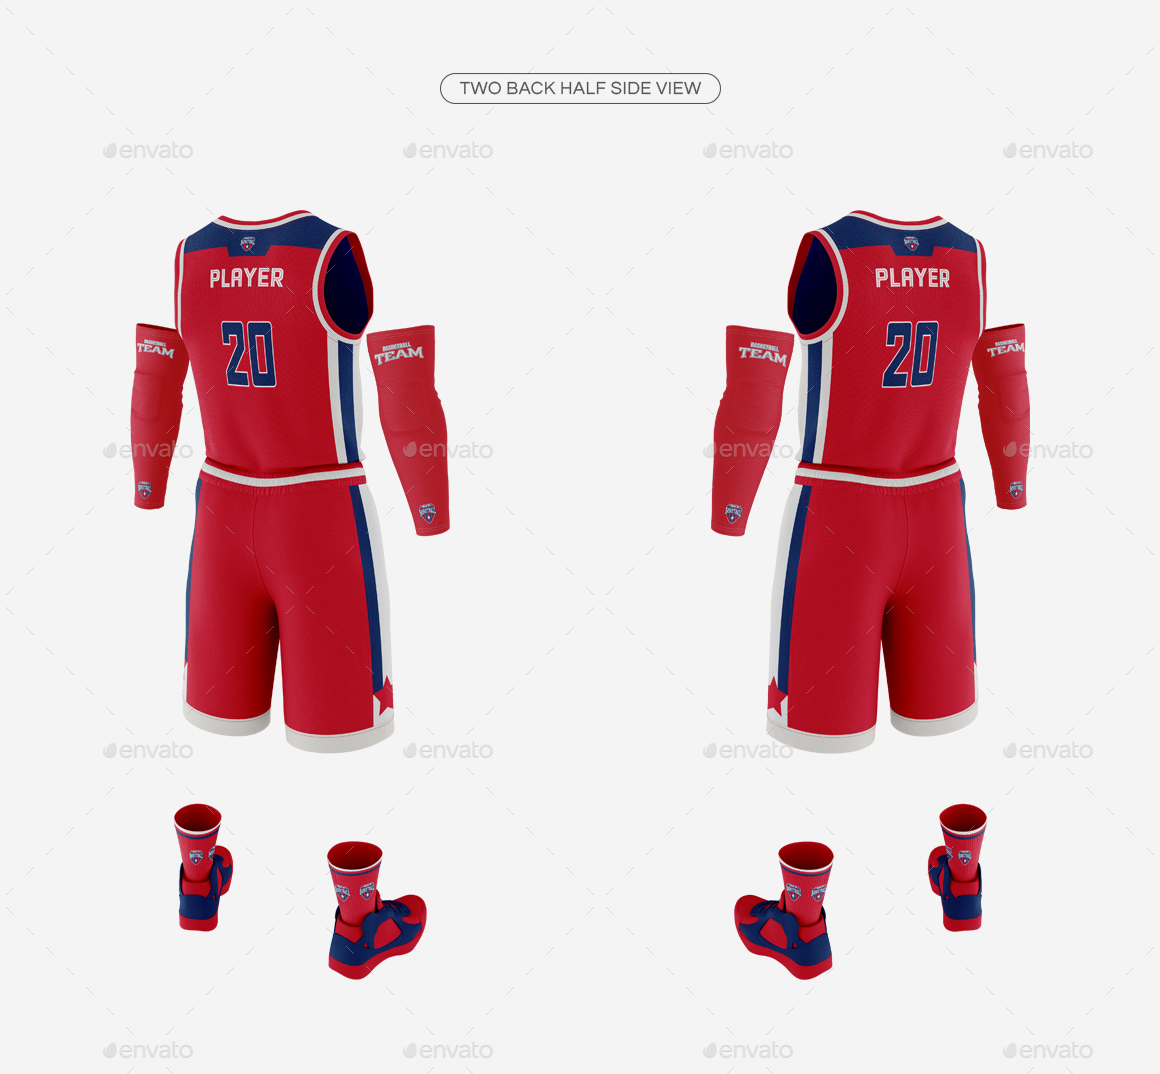 Download Men's Full Basketball Kit V-Neck Jersey Mock-up by ...